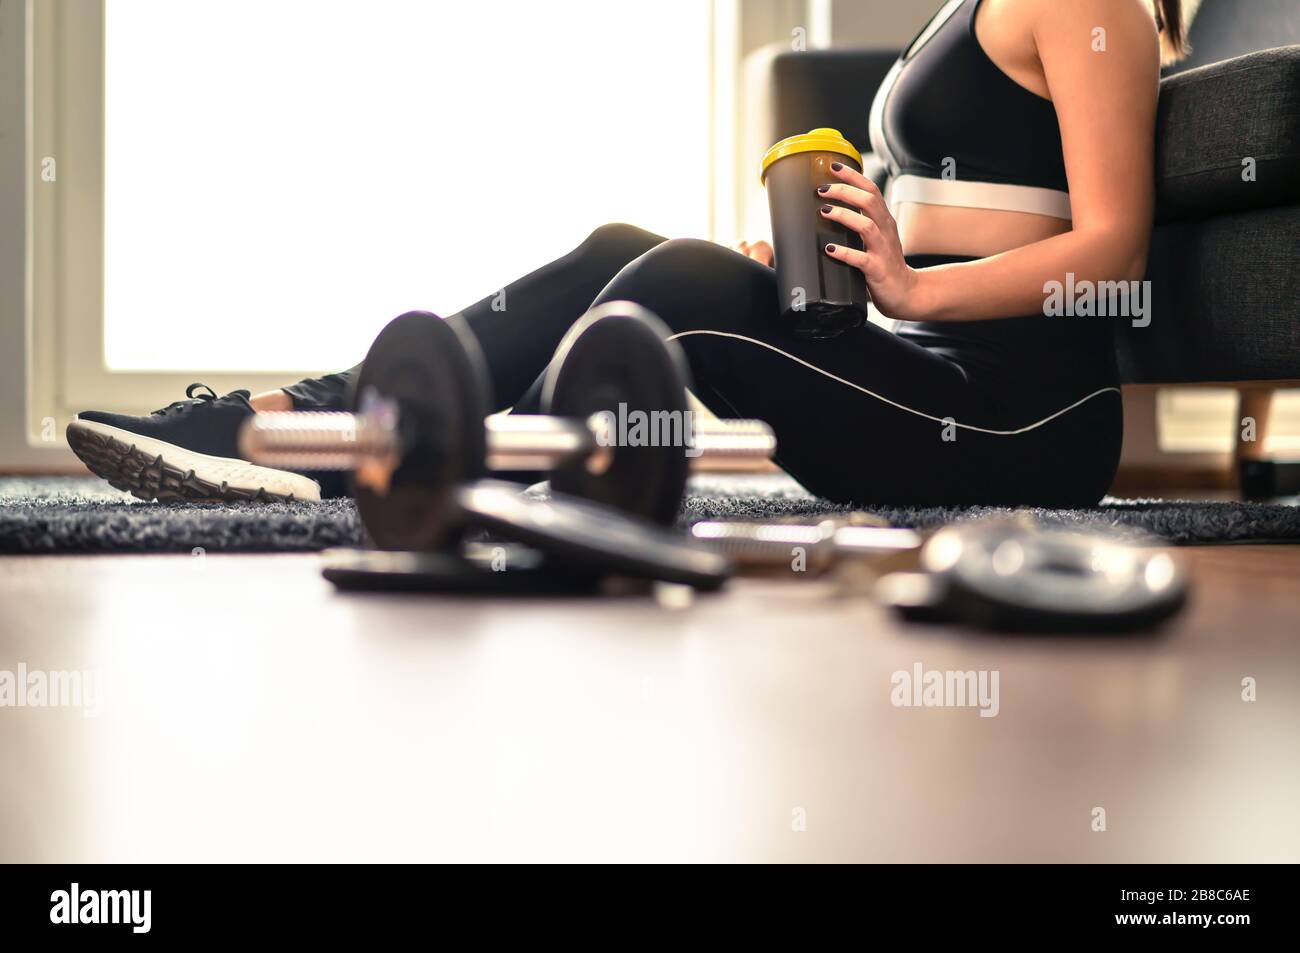 Femme de fitness buvant des protéines ou des boissons de récupération après l'entraînement et l'entraînement de poids. Faire de l'exercice à la maison. Dame dans des vêtements de sport qui se tiennent secoué. Banque D'Images